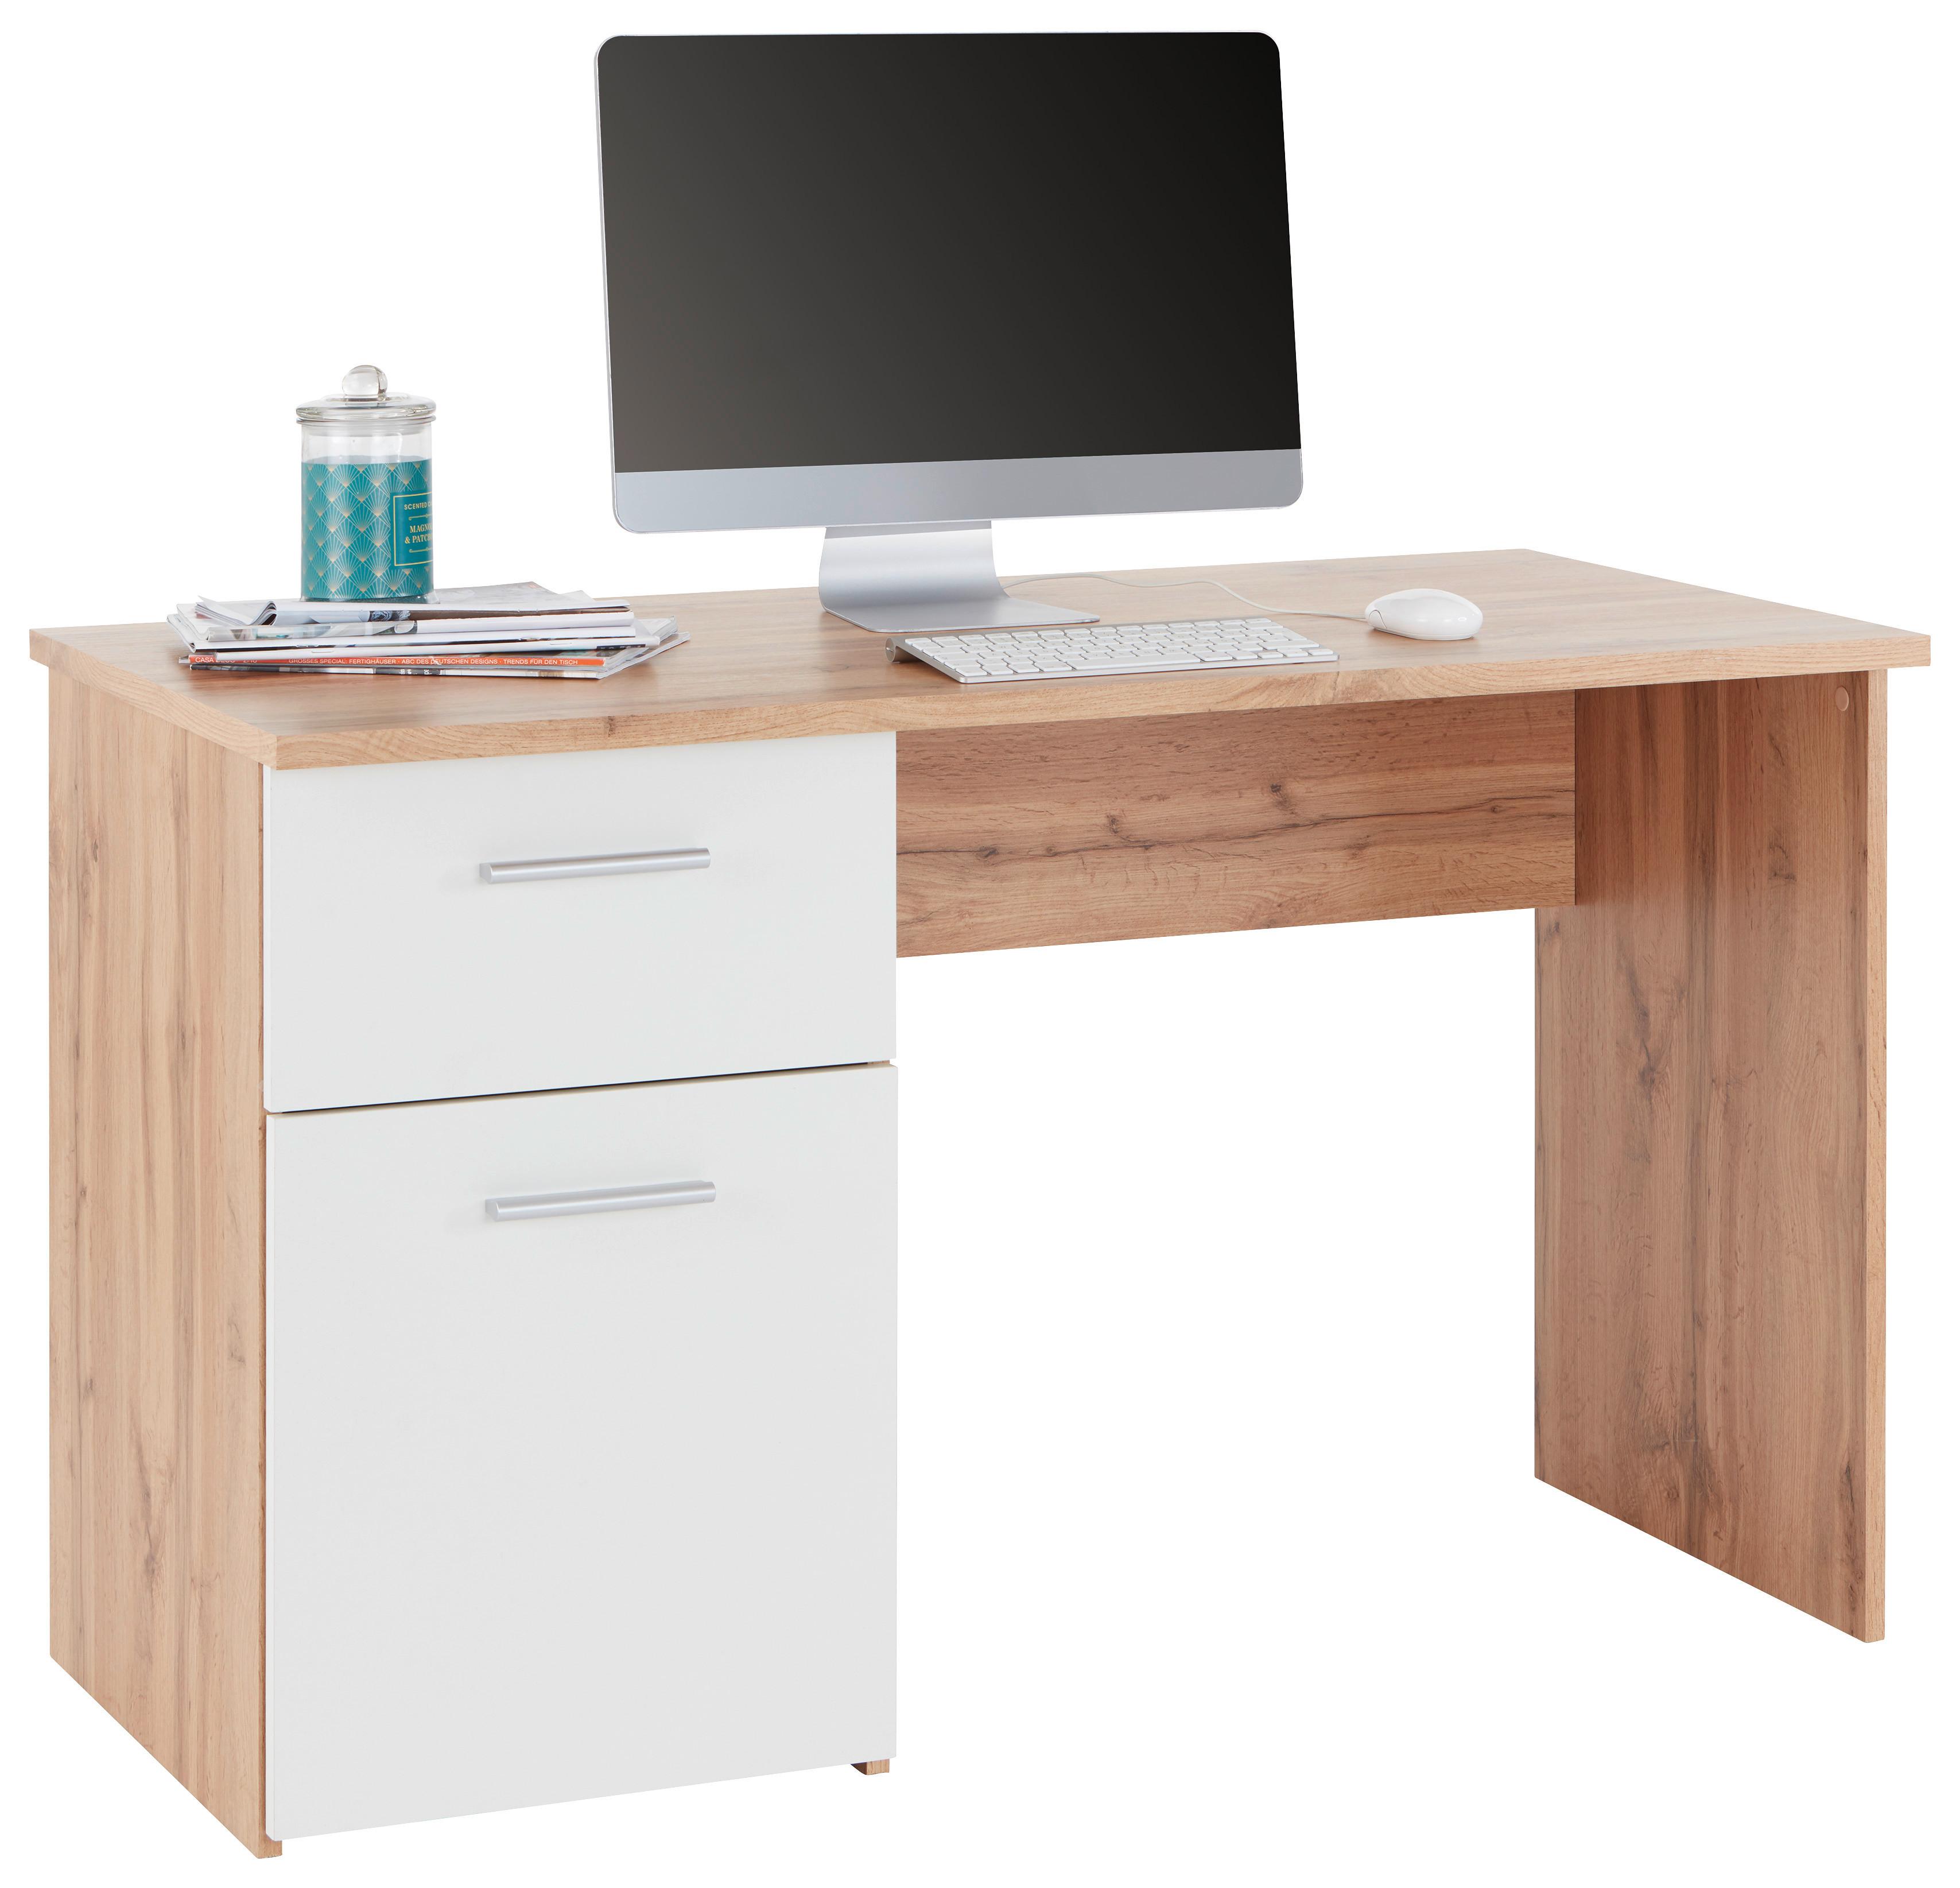 Schreibtisch mit Stauraum B 120cm H 75,4cm Bd-20 Simon - Eichefarben/Weiß, MODERN, Holzwerkstoff (120/75,4/60cm)